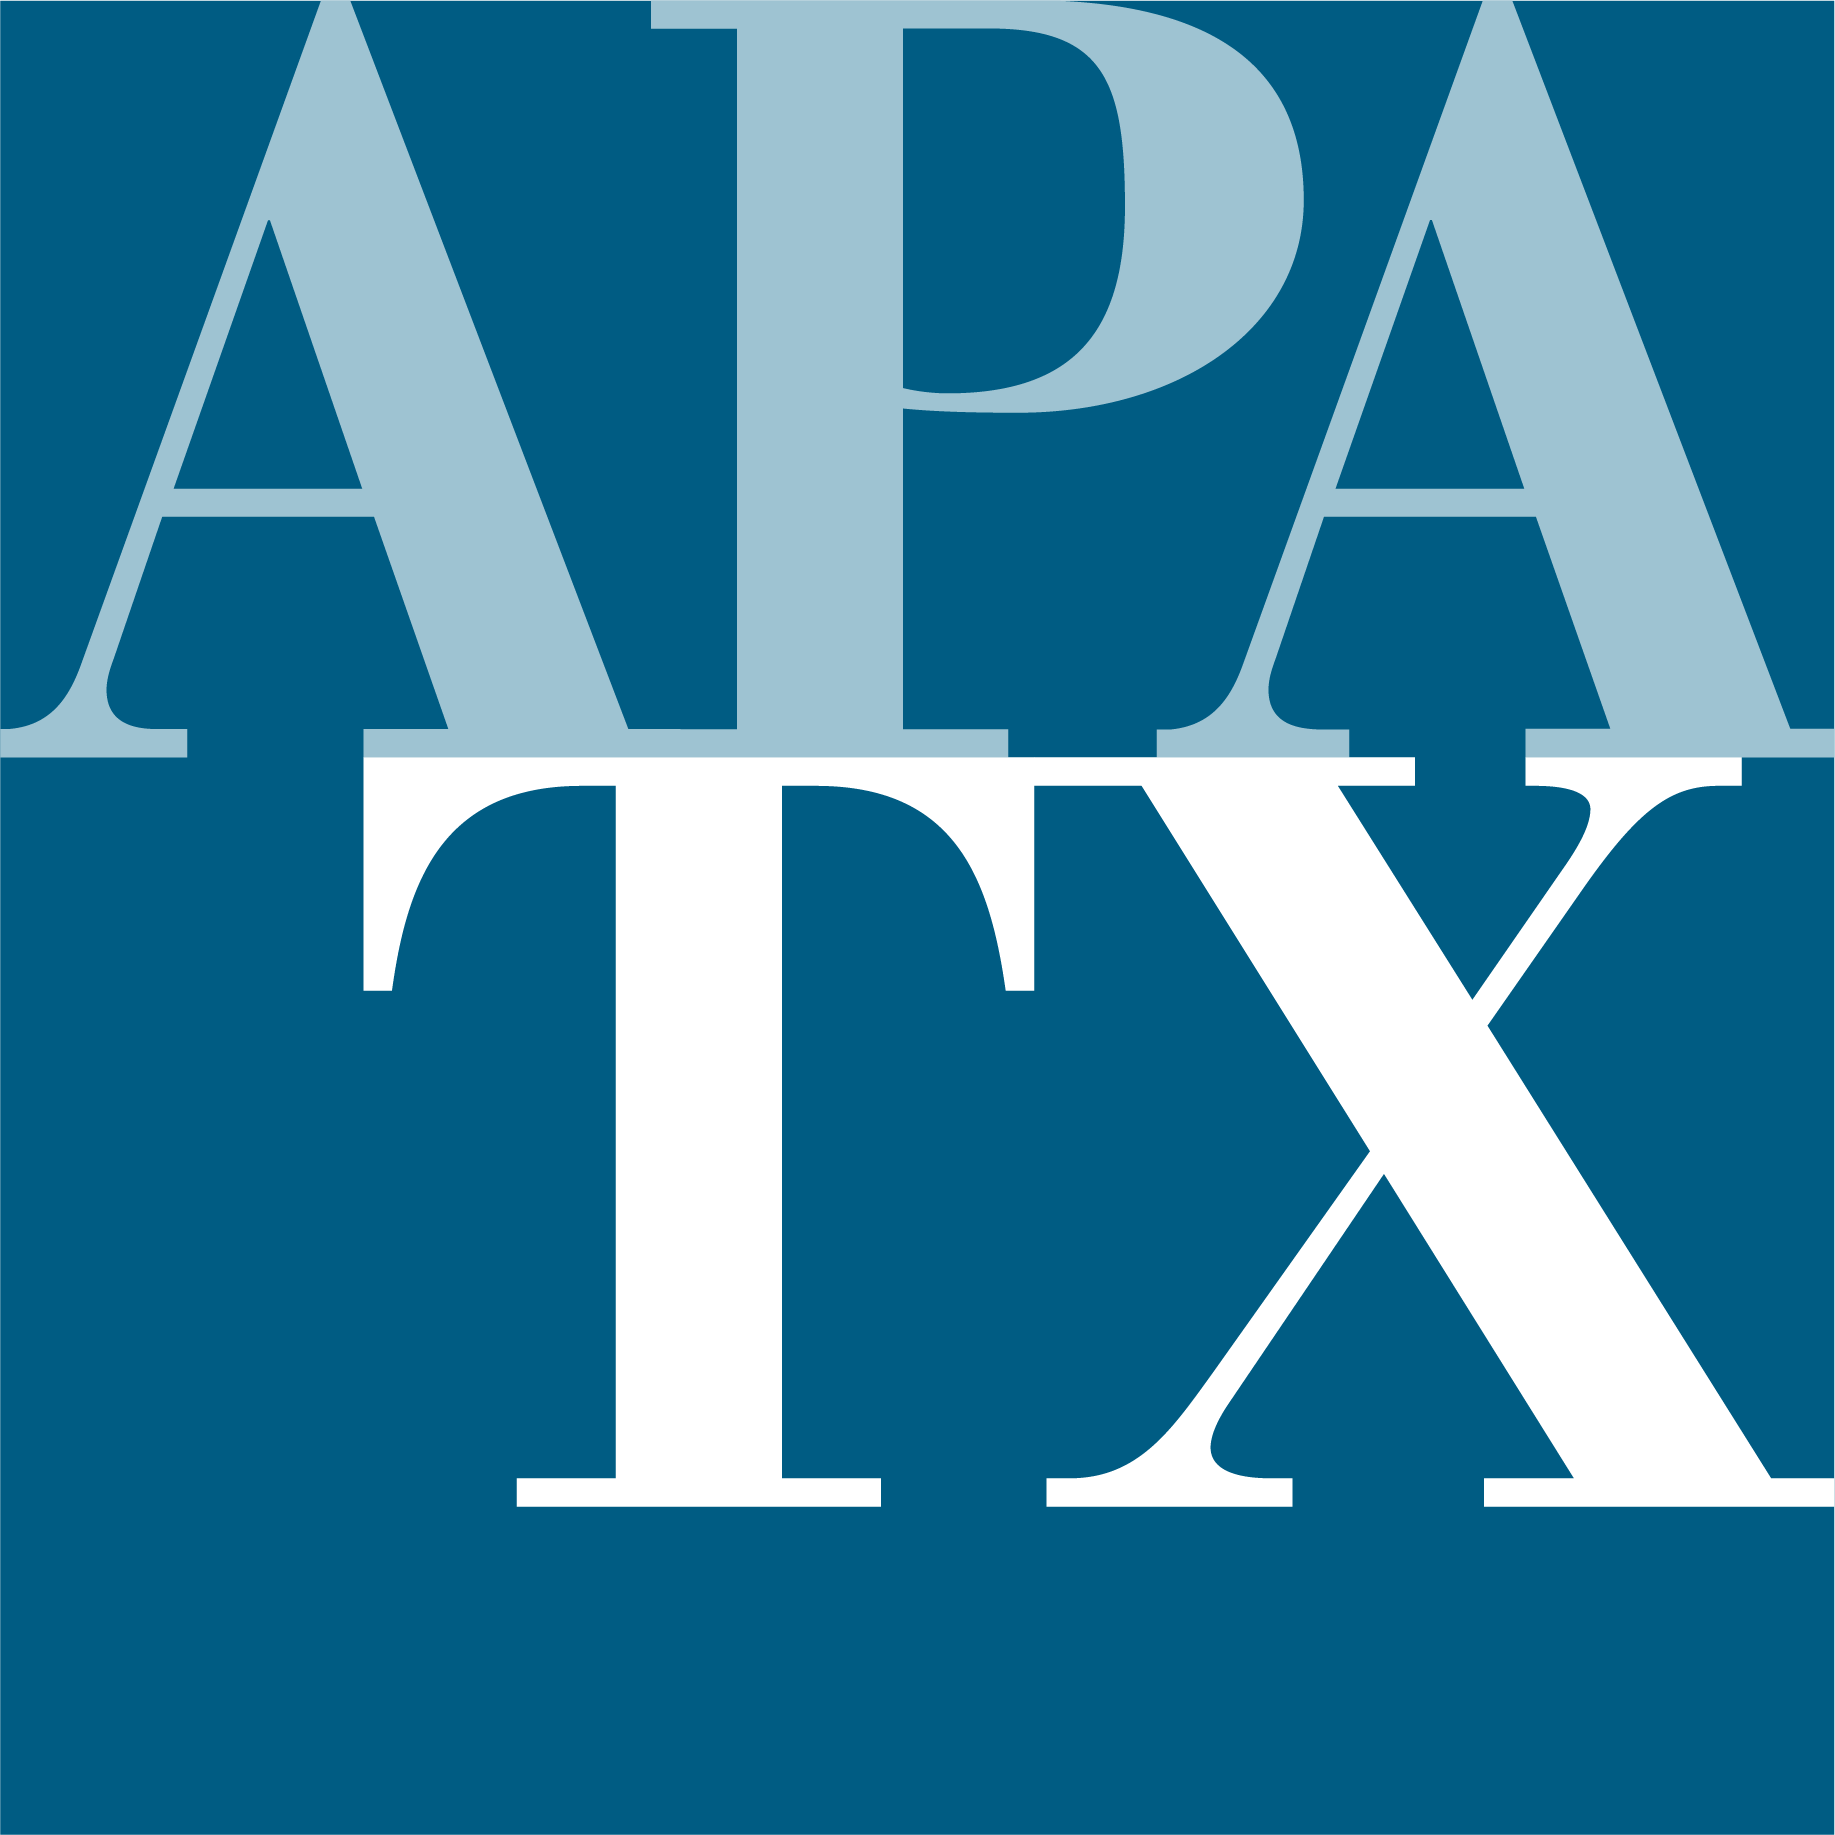 APA Texas -Houston-Galveston Section